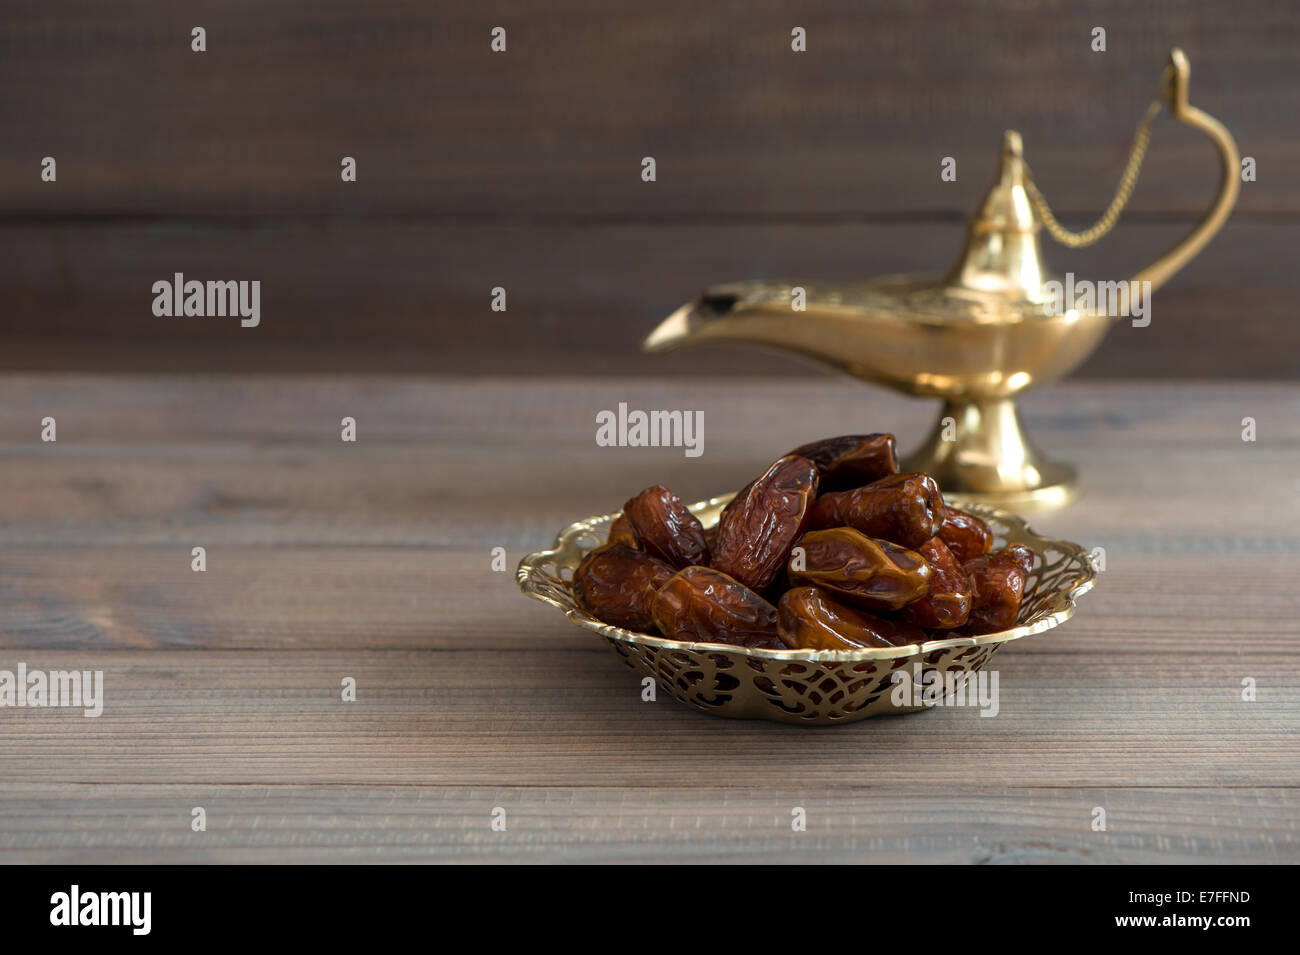 Termine in goldene Schale und Arabische Lampe auf hölzernen Hintergrund Stockfoto